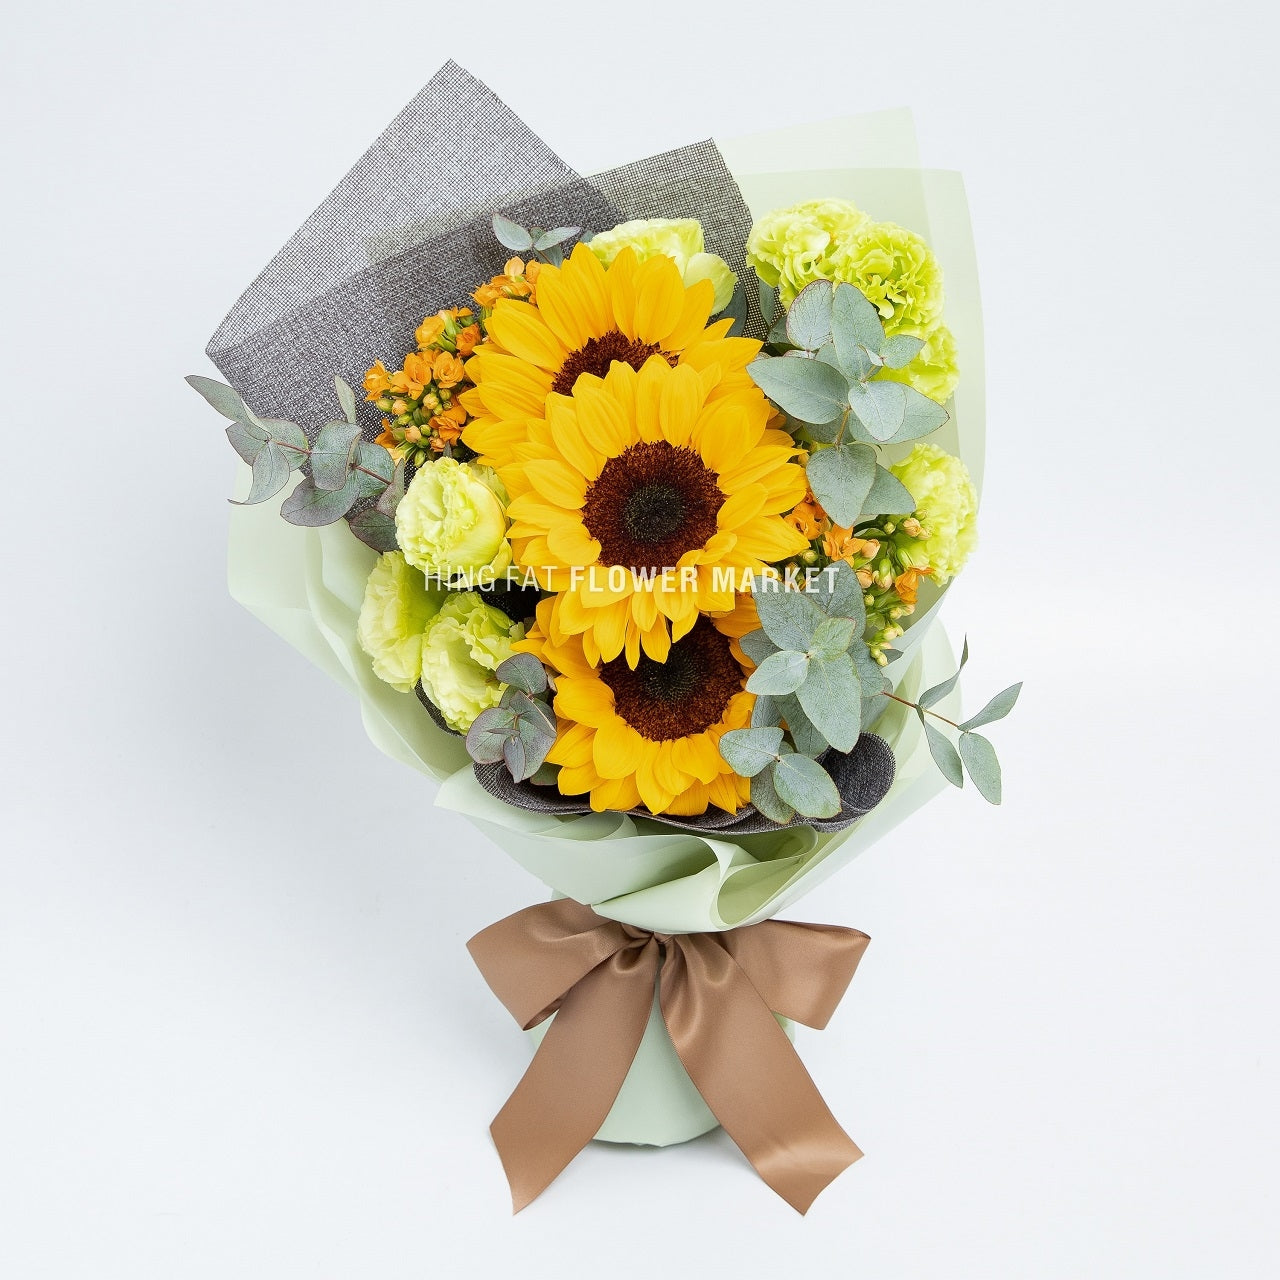 向日葵桔梗花束 Sunflower and eustoma bouquet